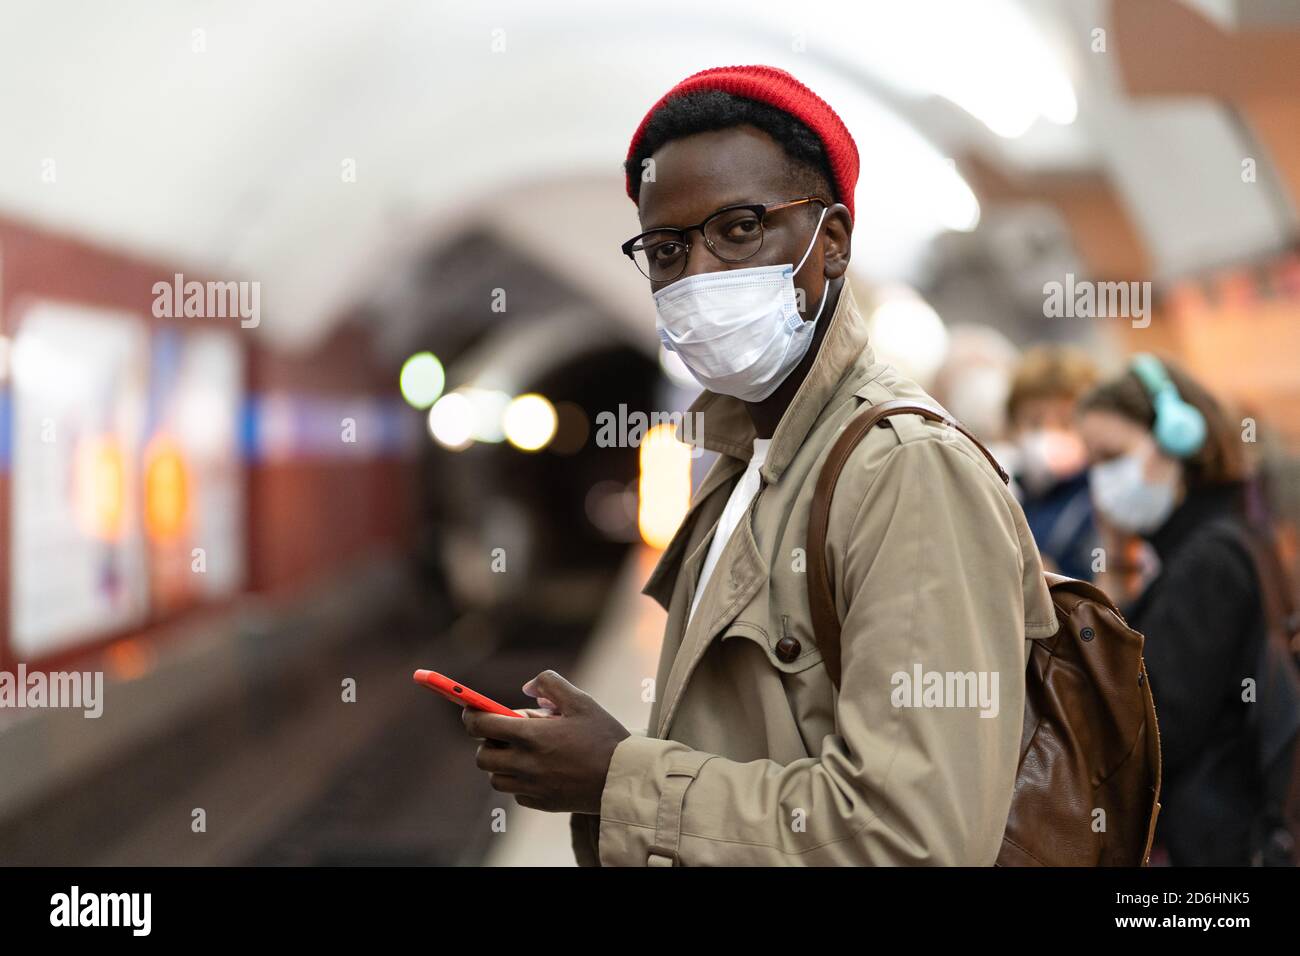 Homme millénaire afro-américain en trench coat, chapeau rouge portant un masque de protection contre le covid-19, virus de la grippe, attendant le train au métro stat Banque D'Images